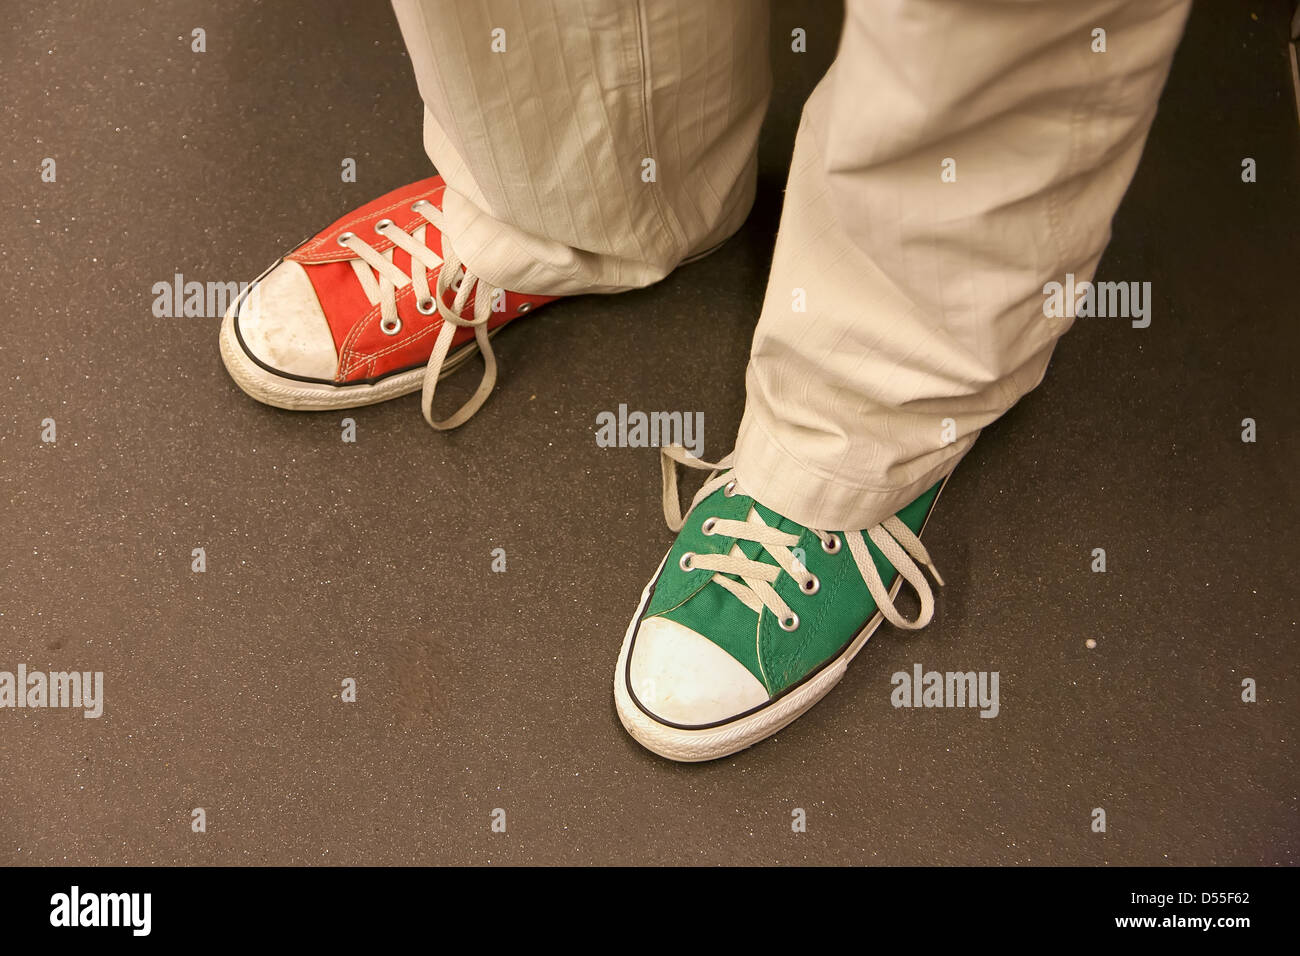 Berlin, Deutschland, der Mann mit der Marke Converse Sneakers in zwei  verschiedenen Farben Stockfotografie - Alamy